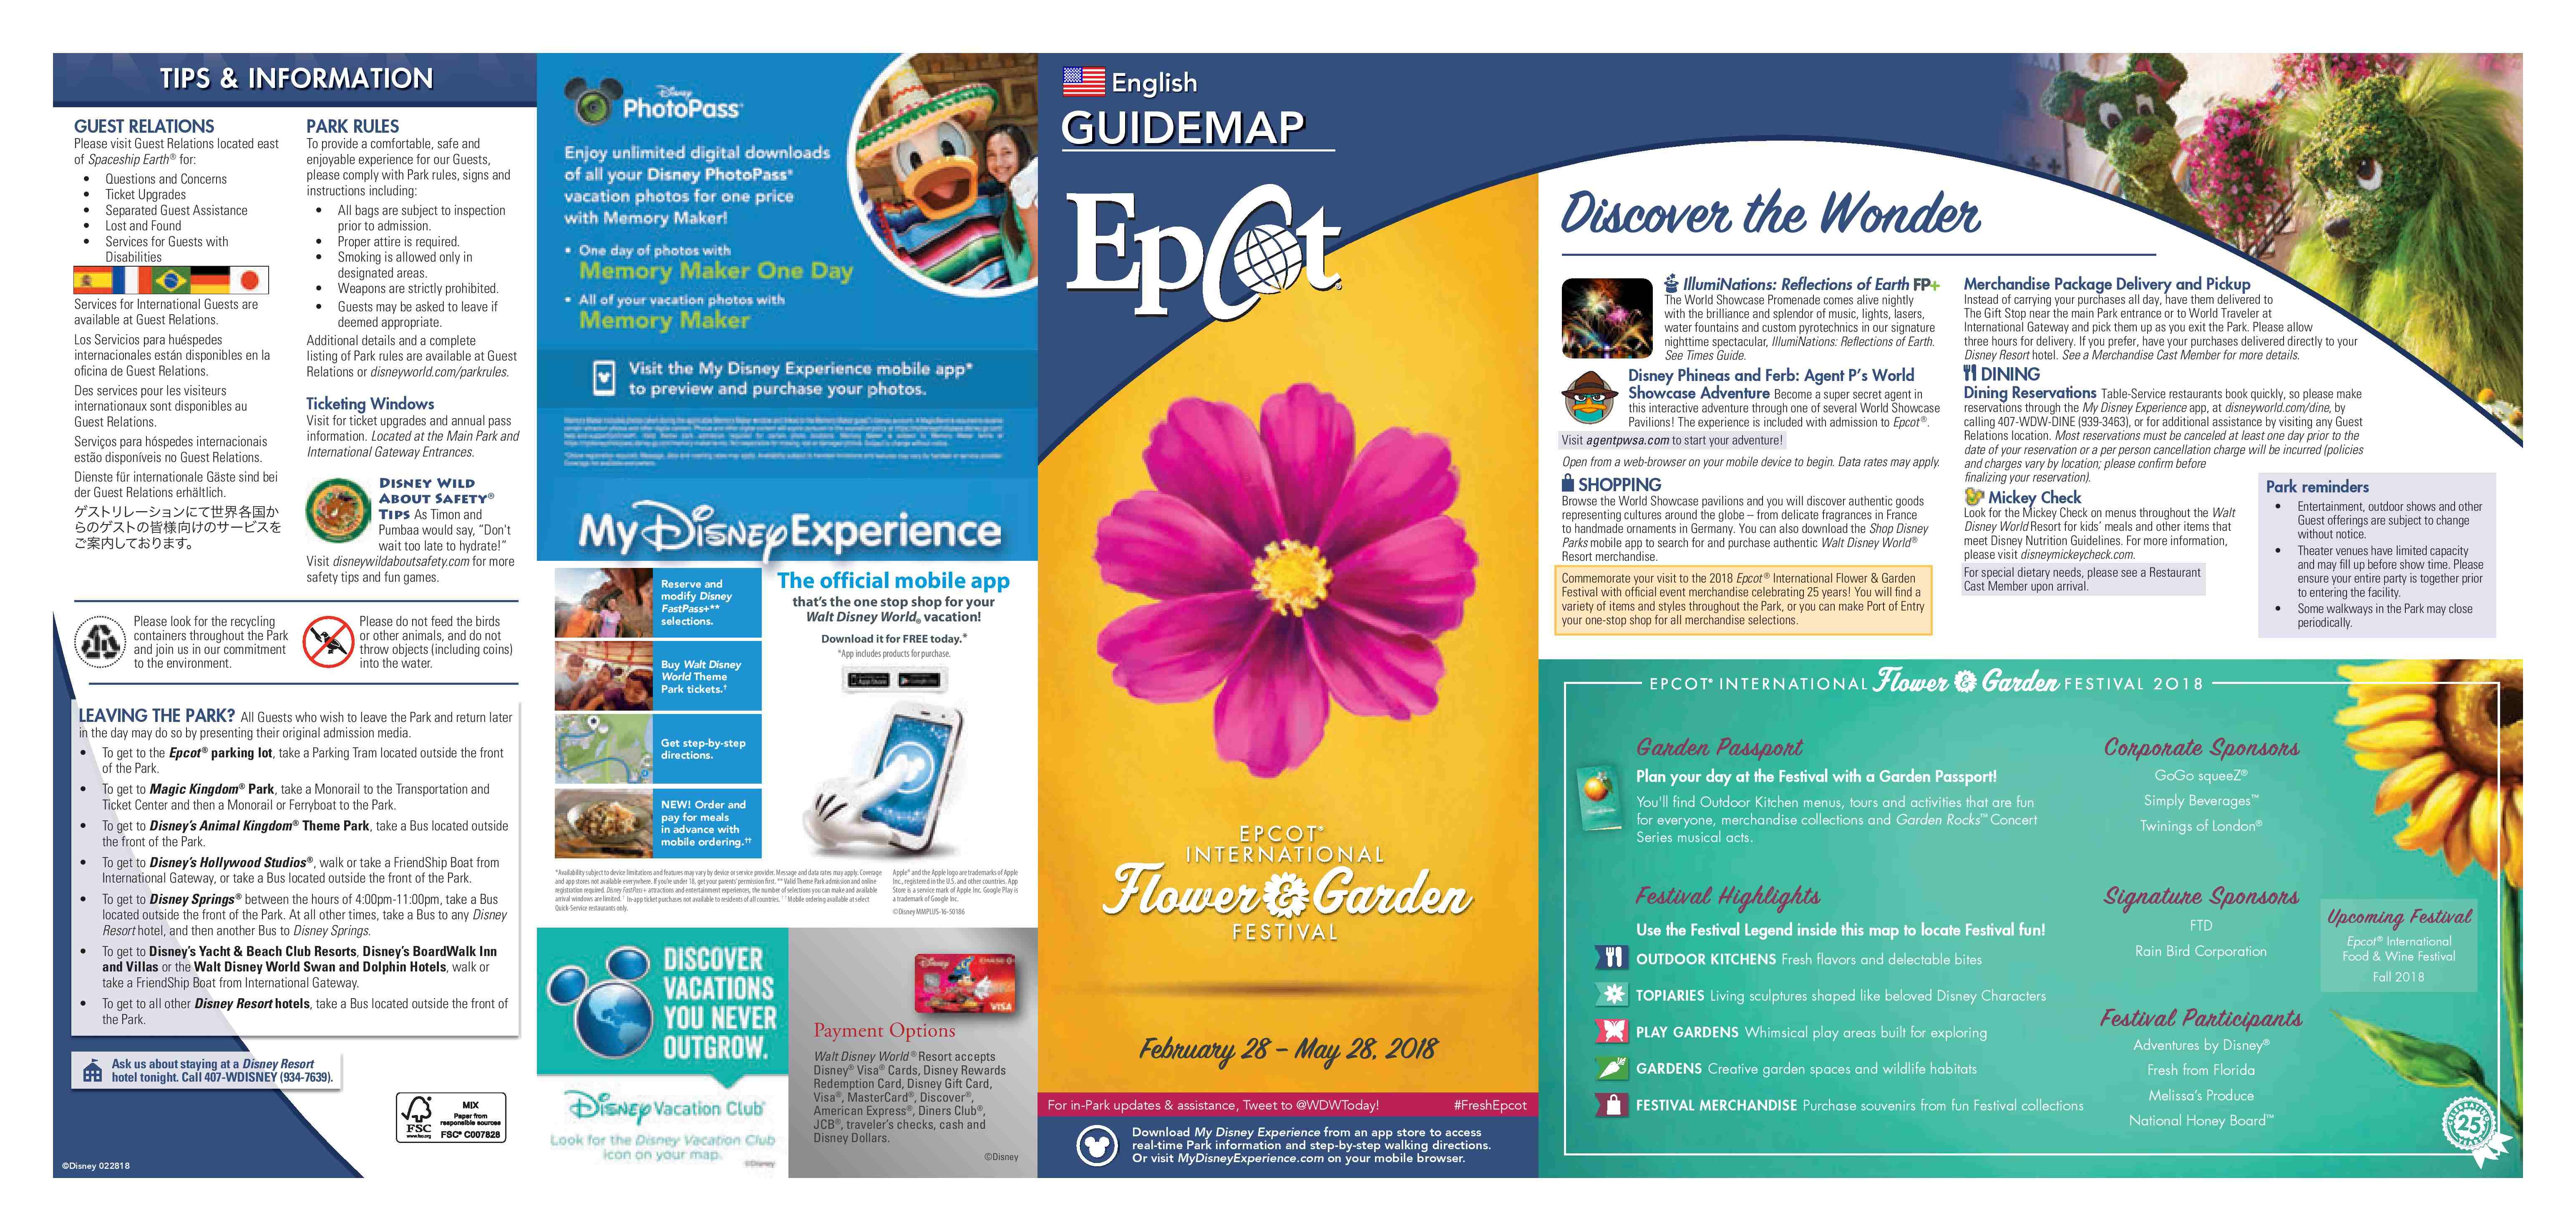 Disney Epcot International Flower and Garden Festival Guidemap & Passport 2018 